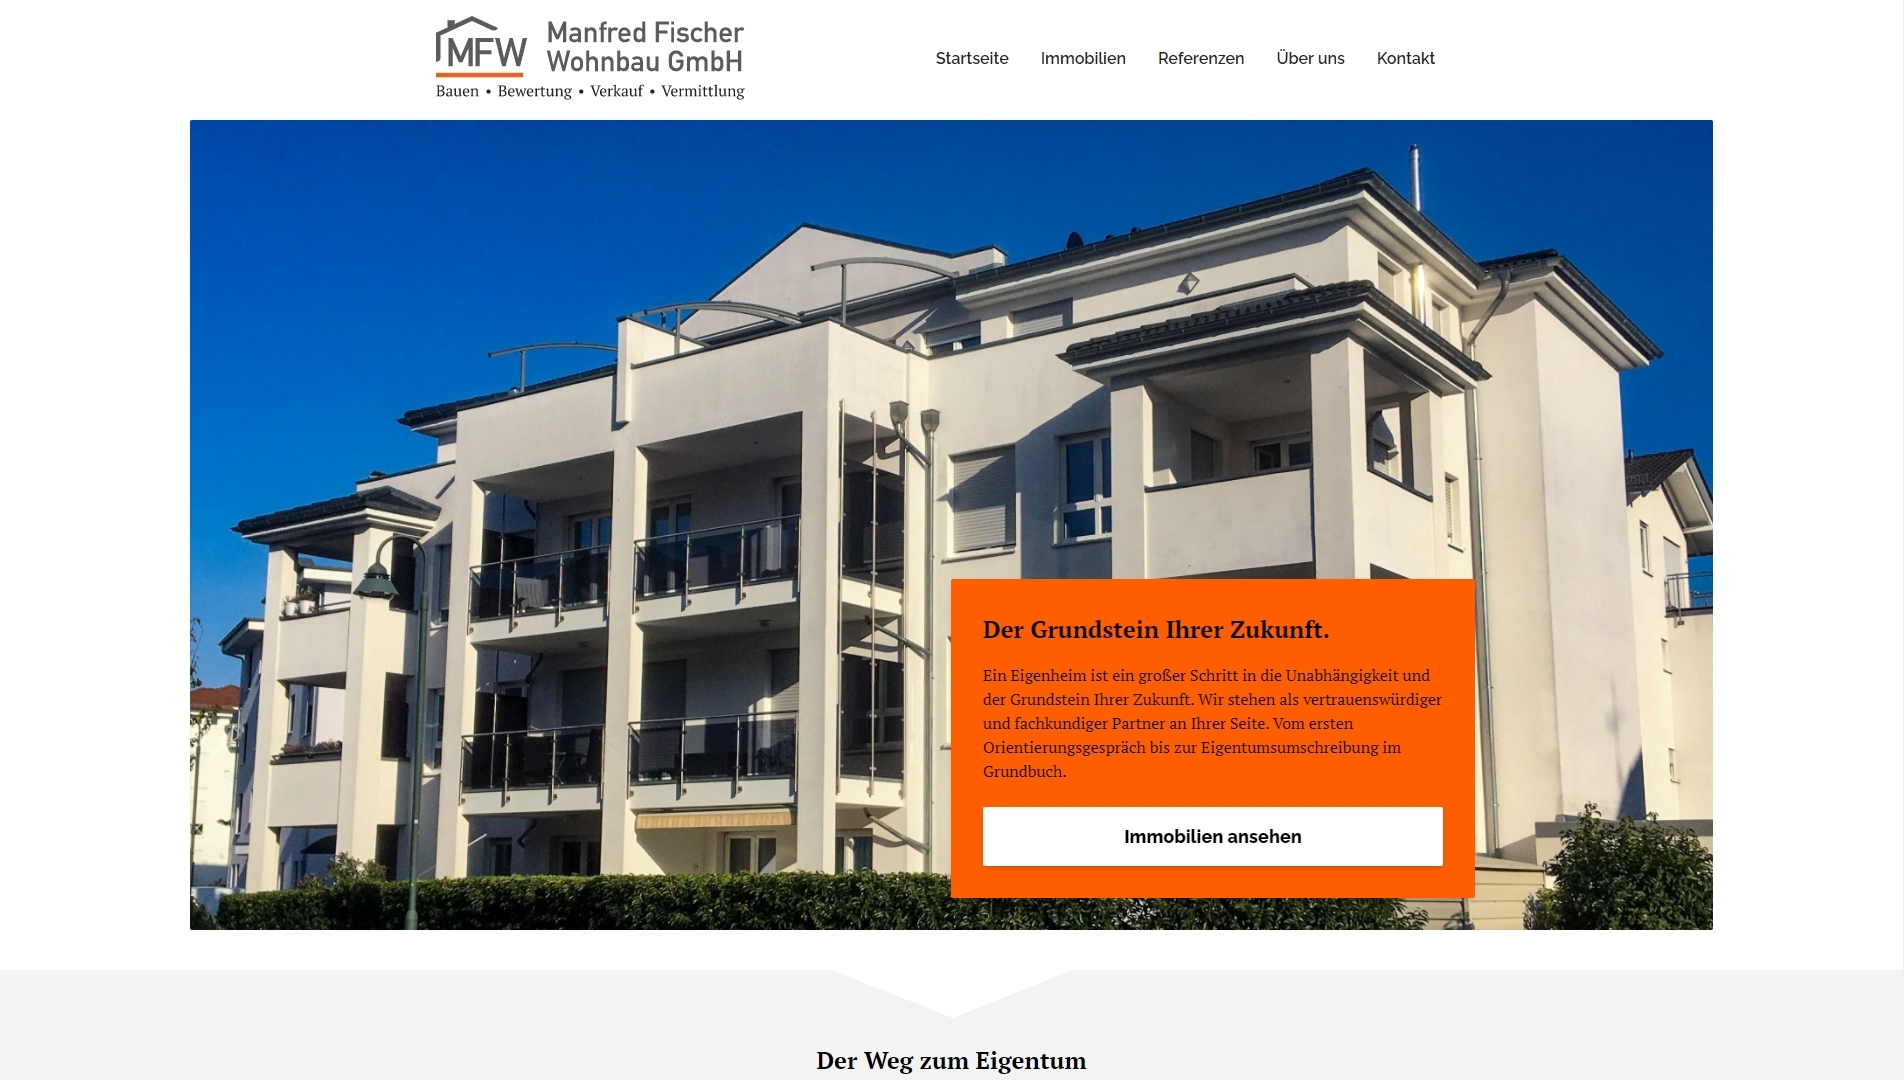 Die Manfred Fischer Wohnbau GmbH Startseite zielt darauf an, neue Besucher direkt auf den Stil des Bauträgers sowie auf die verfügbaren Immobilien aufmerksam zu machen